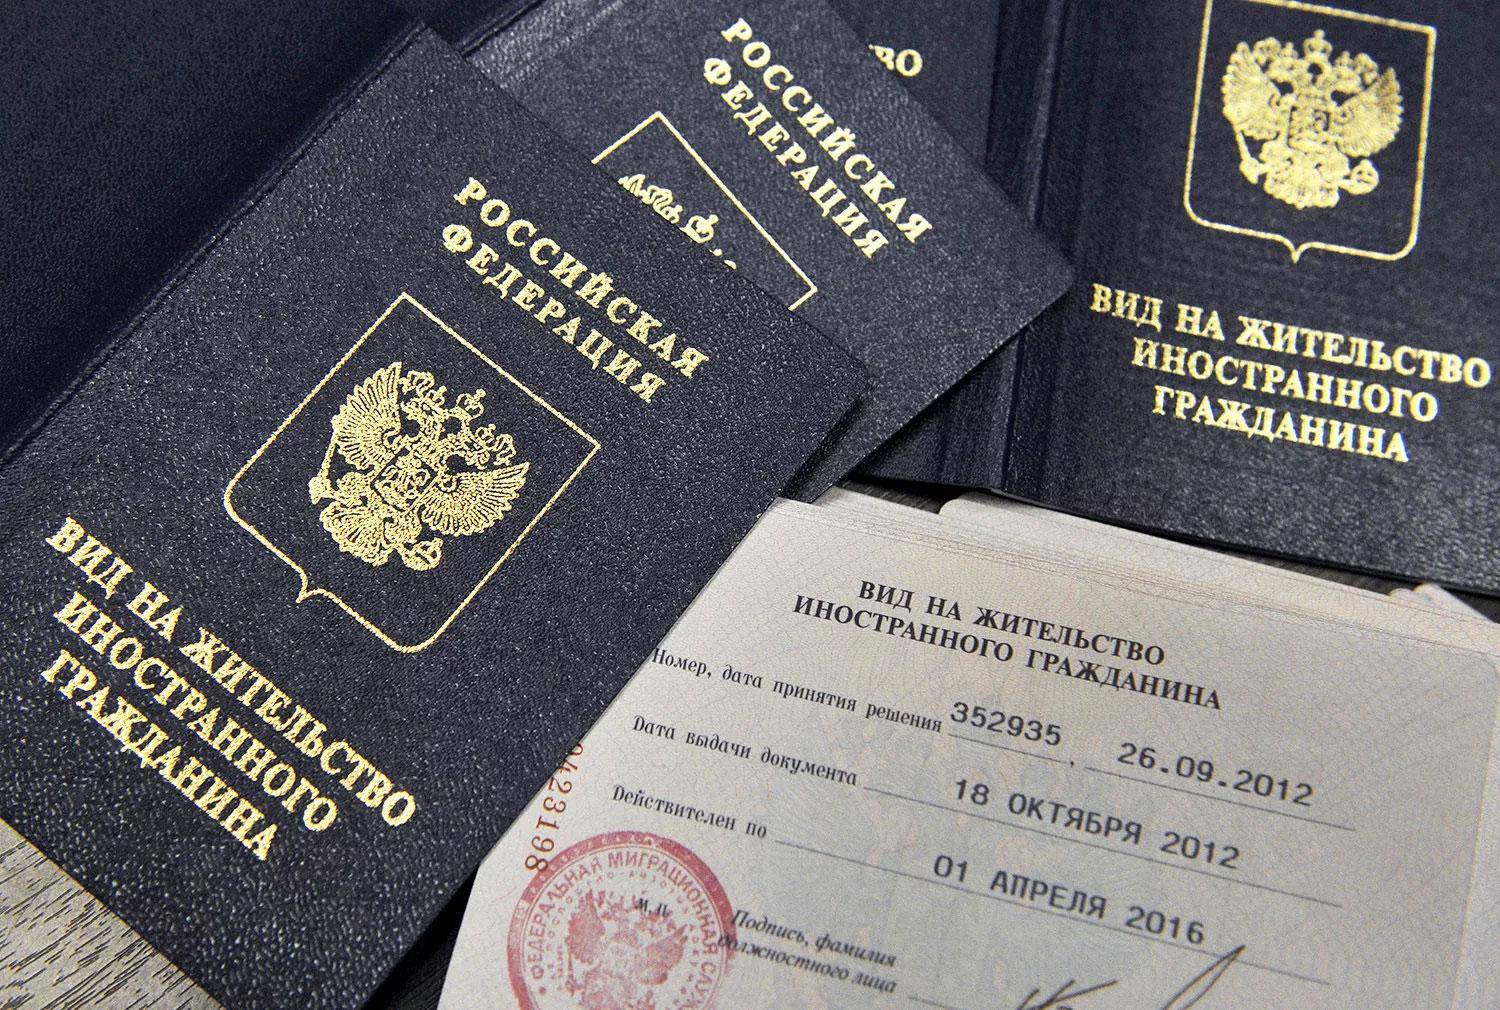 Гражданство румынии для россиян в 2023 году: как получить, что дает